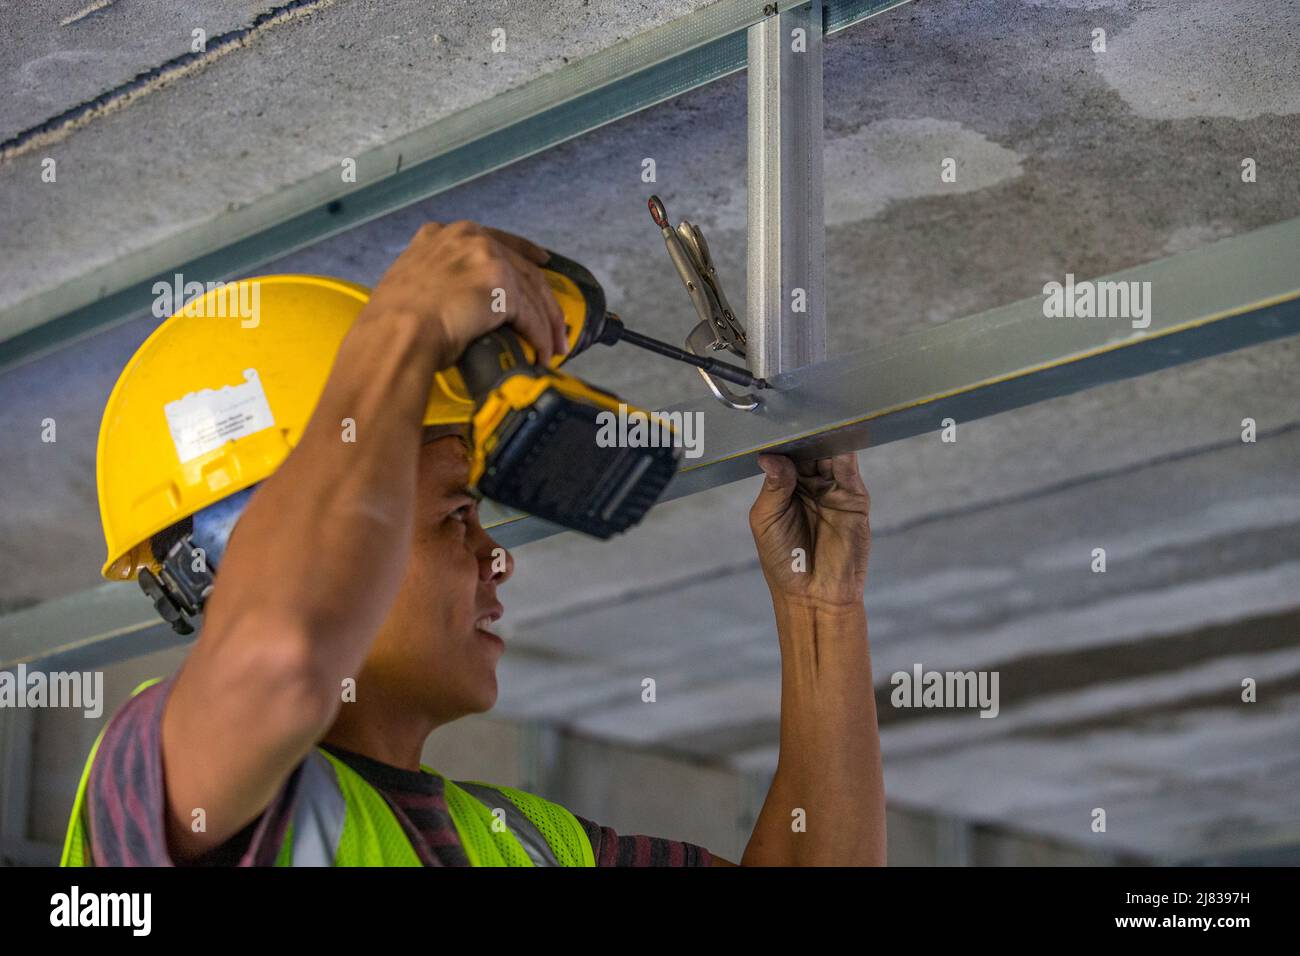 Facharbeiter im Bauwesen, der eine C-Klemme und einen elektrischen Schraubendreher verwendet, um eine Stahlstrebe an einer Stützstrebe für eine abgehängte Decke in einem zu befestigen Stockfoto